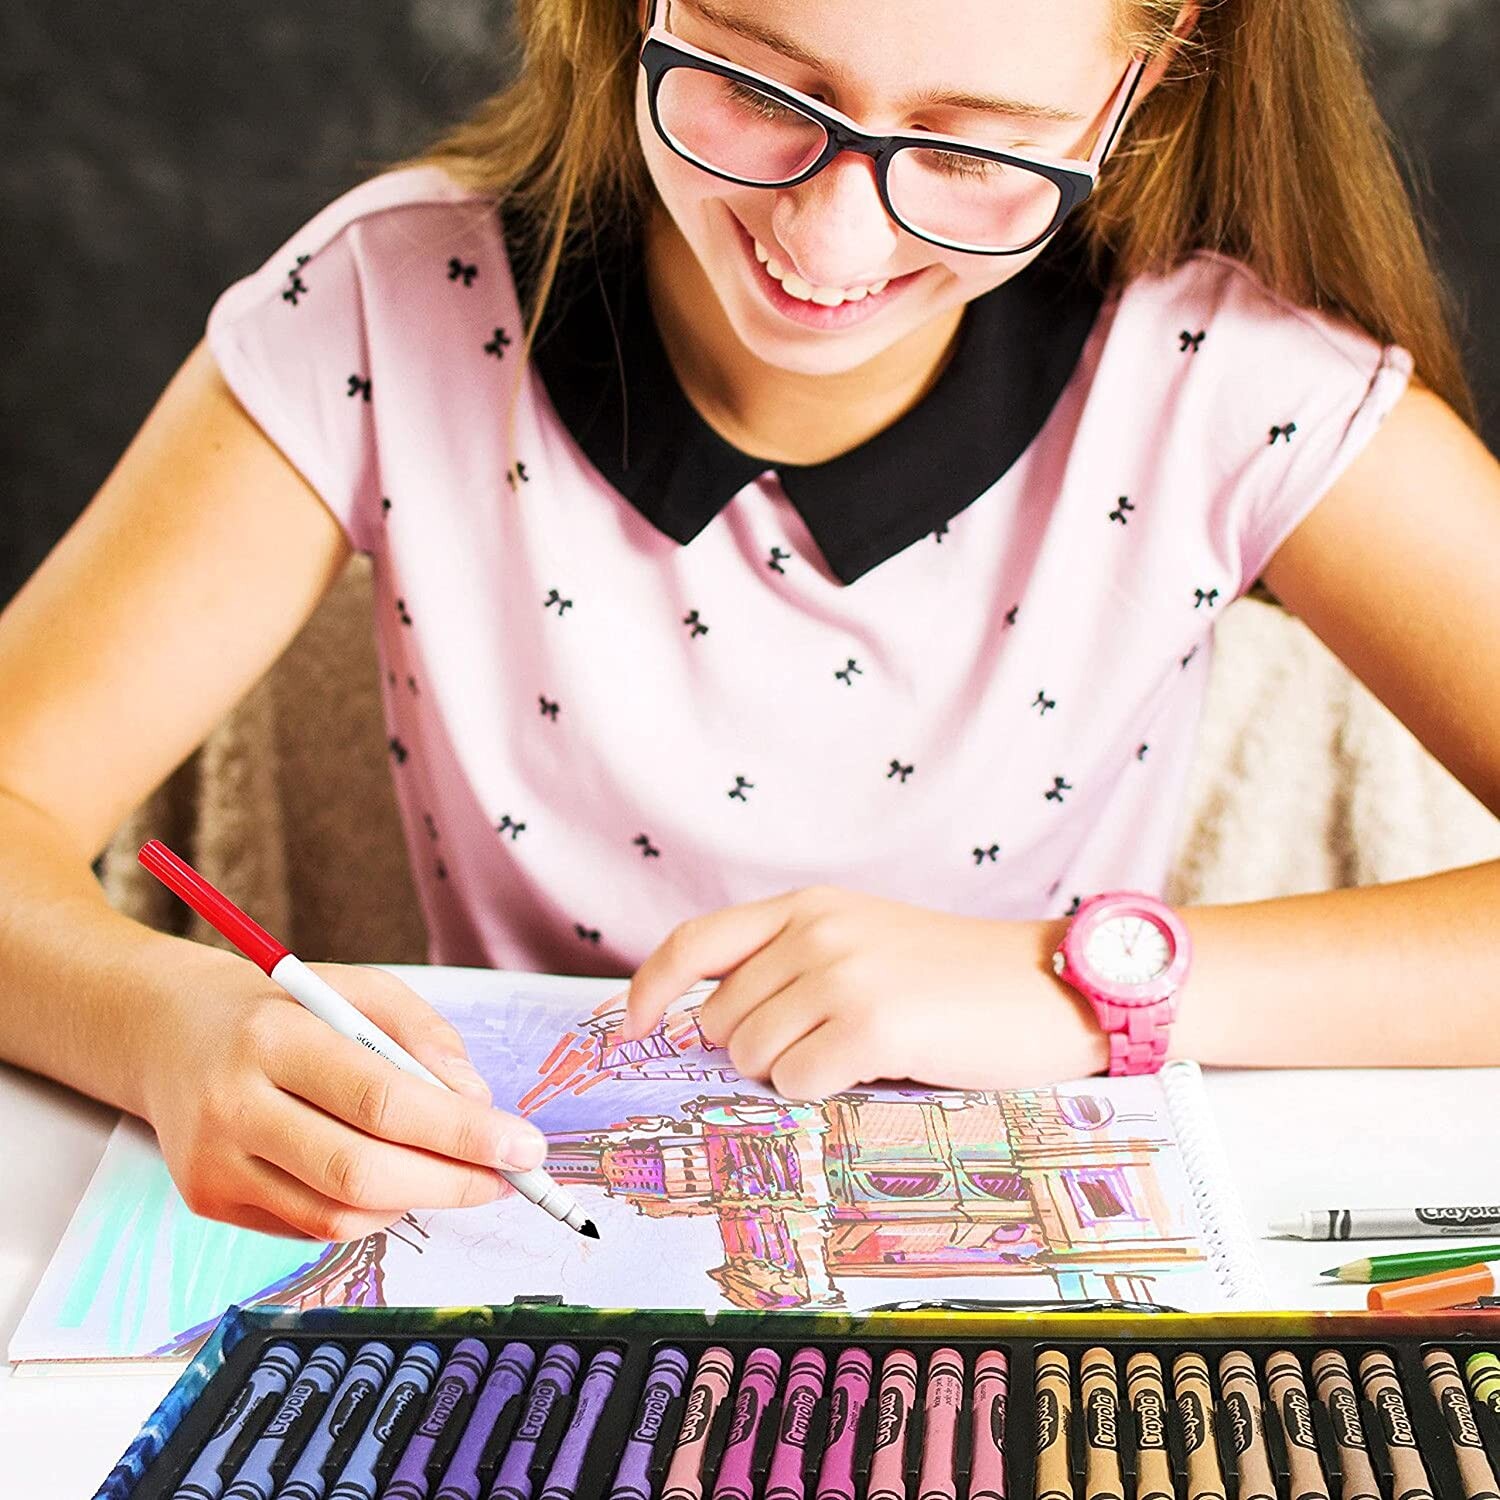 Crayola valigetta colori arcobaleno - kit creativo con 140 pezzi assortiti, età consigliata: 5-10 anni - CRAYOLA